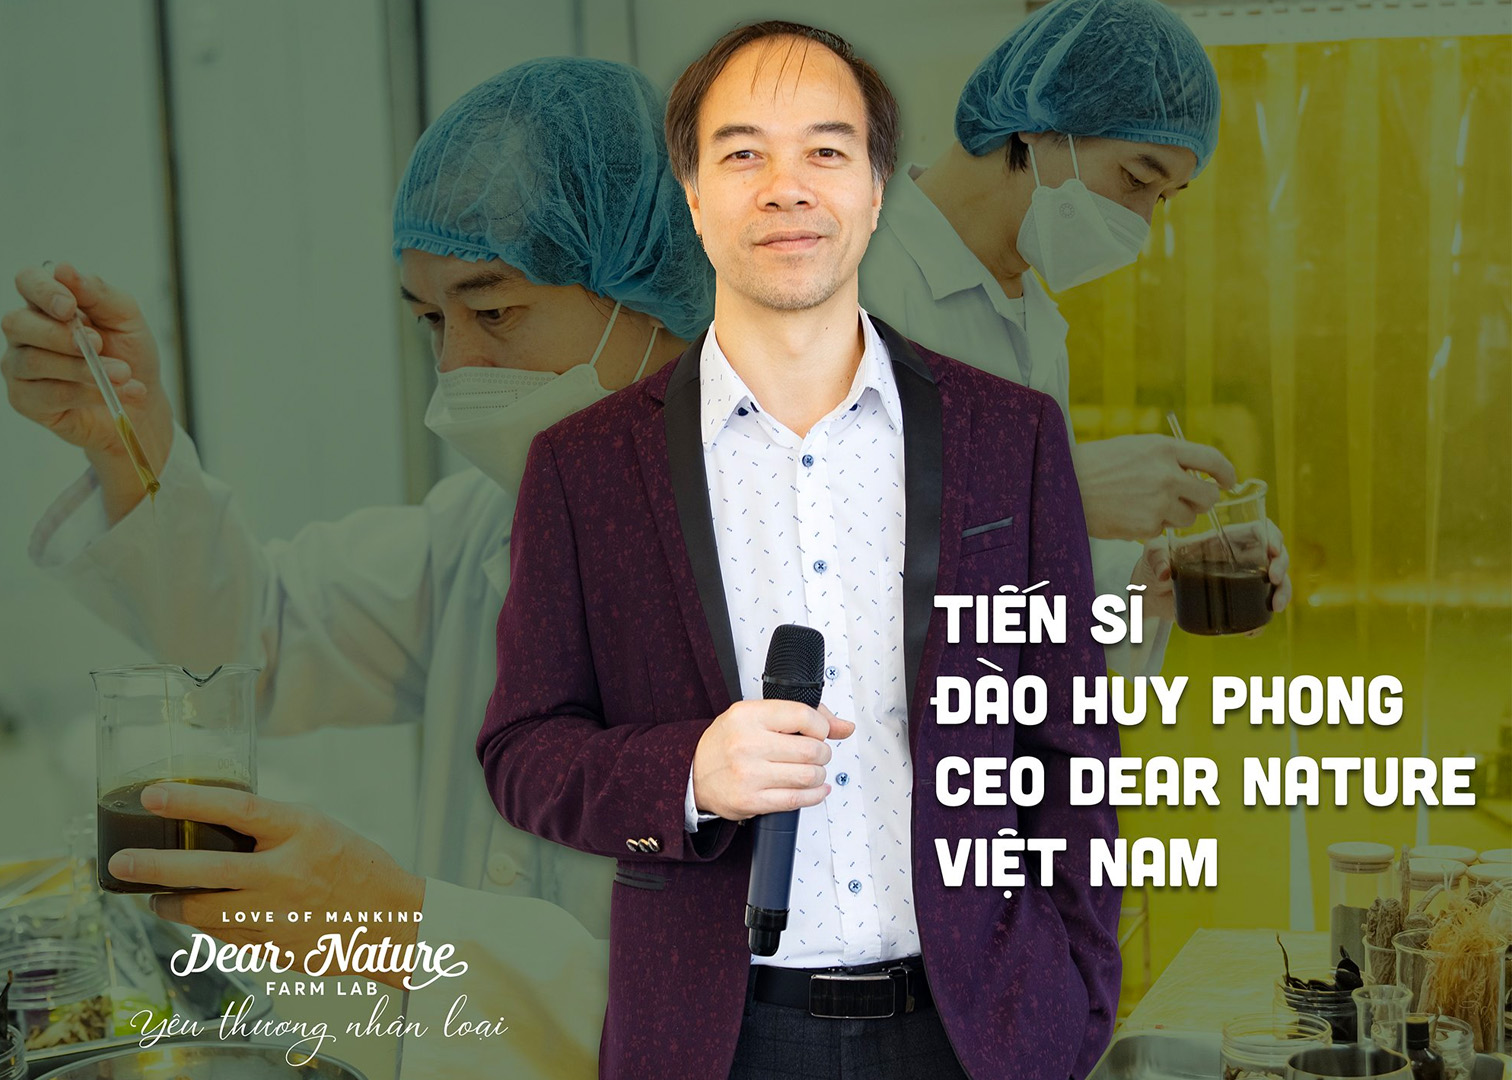 [CAFEBIZ] CEO Dear Nature Khỏe Tự Nhiên: Người Việt nằm trên đống thuốc quý mà không biết!